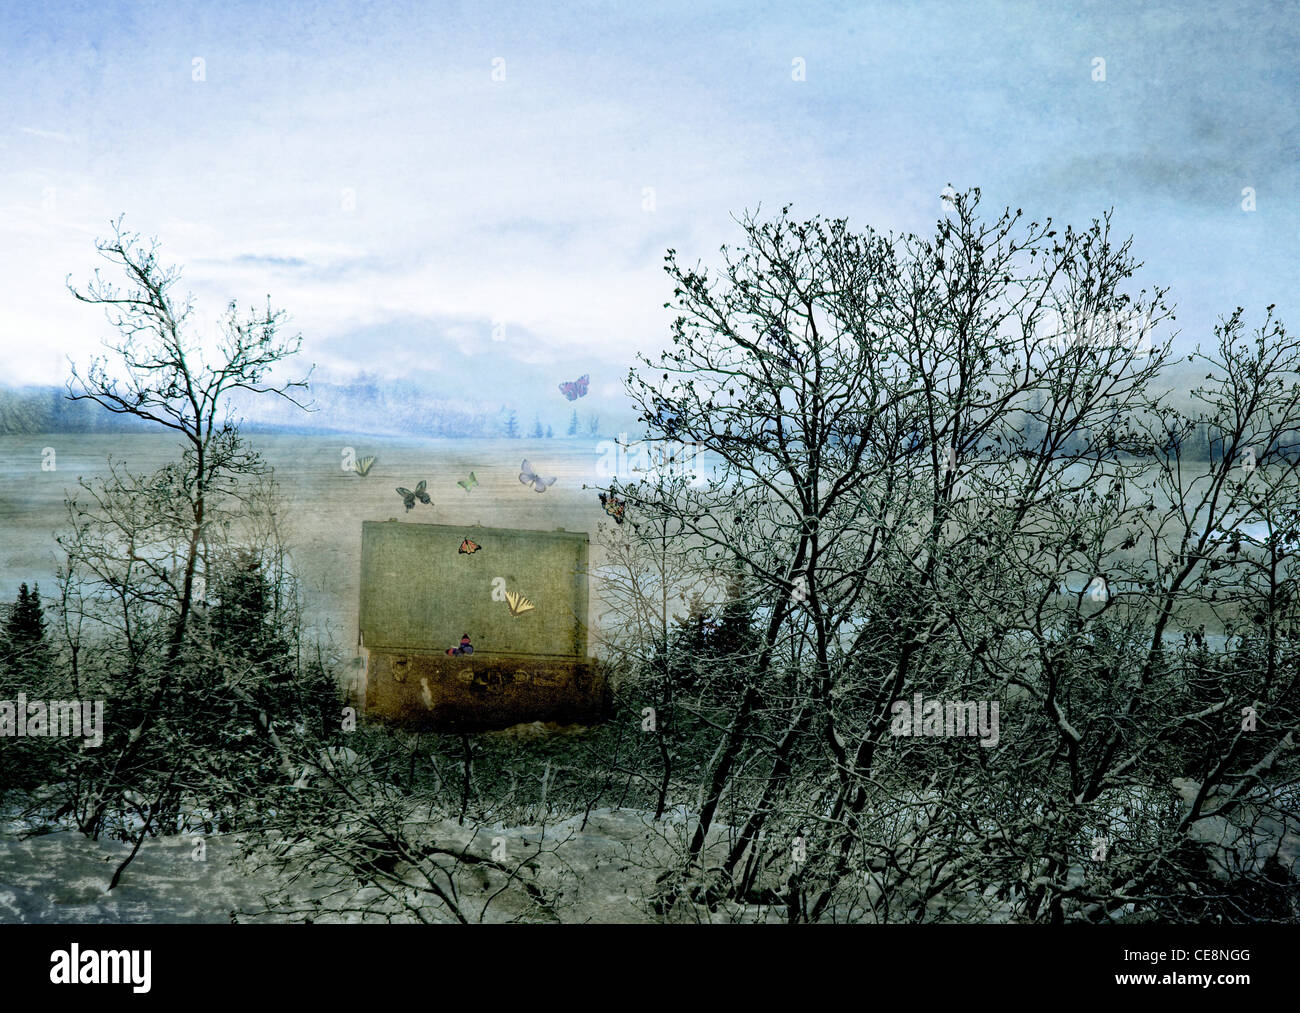 Scène surréaliste de rêve avec papillons streaming sur un tronc magique situé dans un paysage d'hiver. Banque D'Images